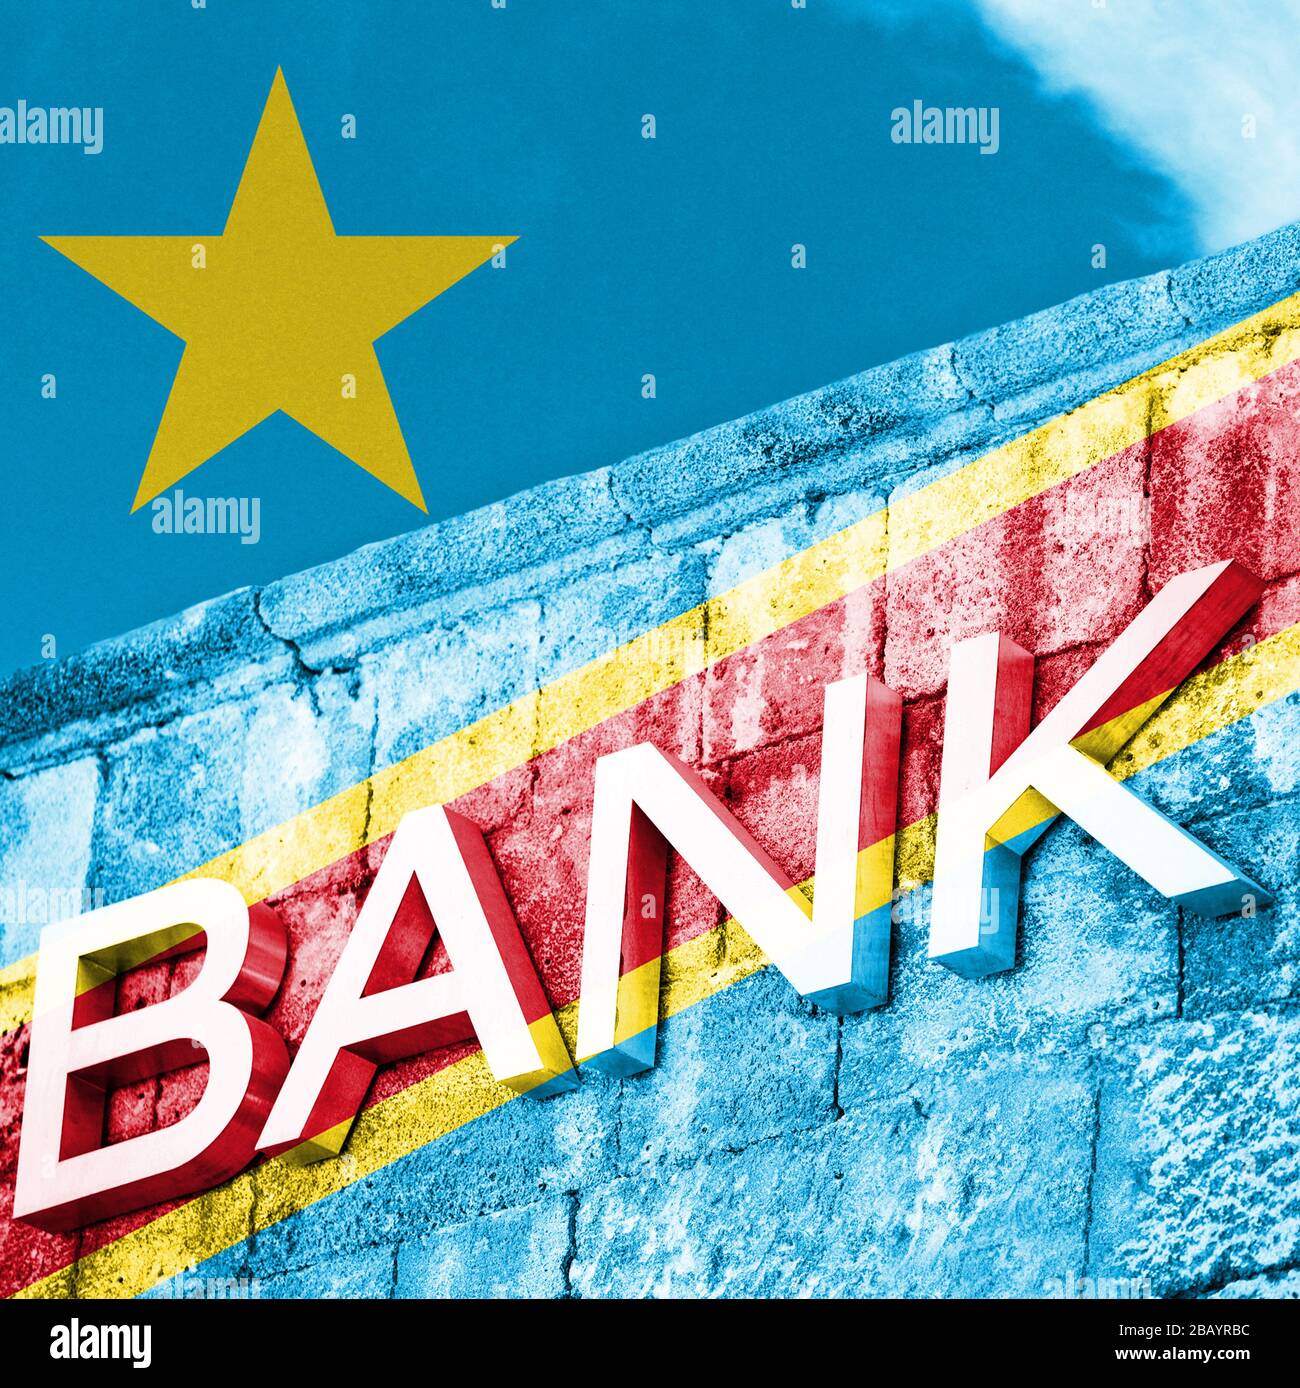 Finanz- und Wirtschaftskonzept der Bank mit Flagge der Demokratischen Republik Kongo Stockfoto